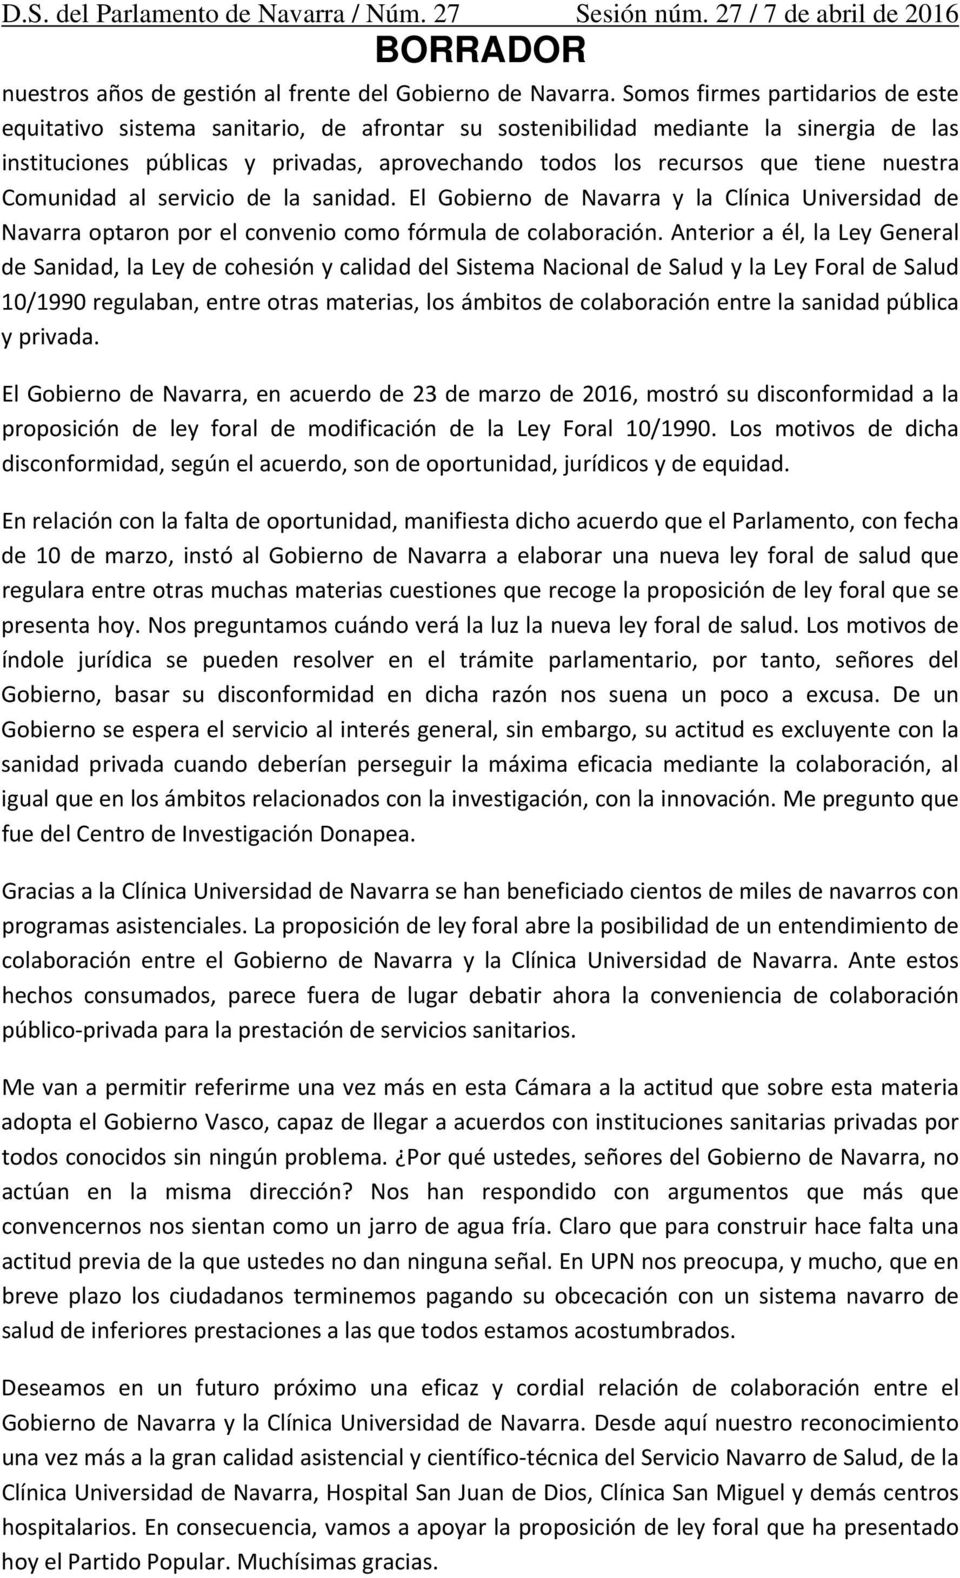 nuestra Comunidad al servicio de la sanidad. El Gobierno de Navarra y la Clínica Universidad de Navarra optaron por el convenio como fórmula de colaboración.